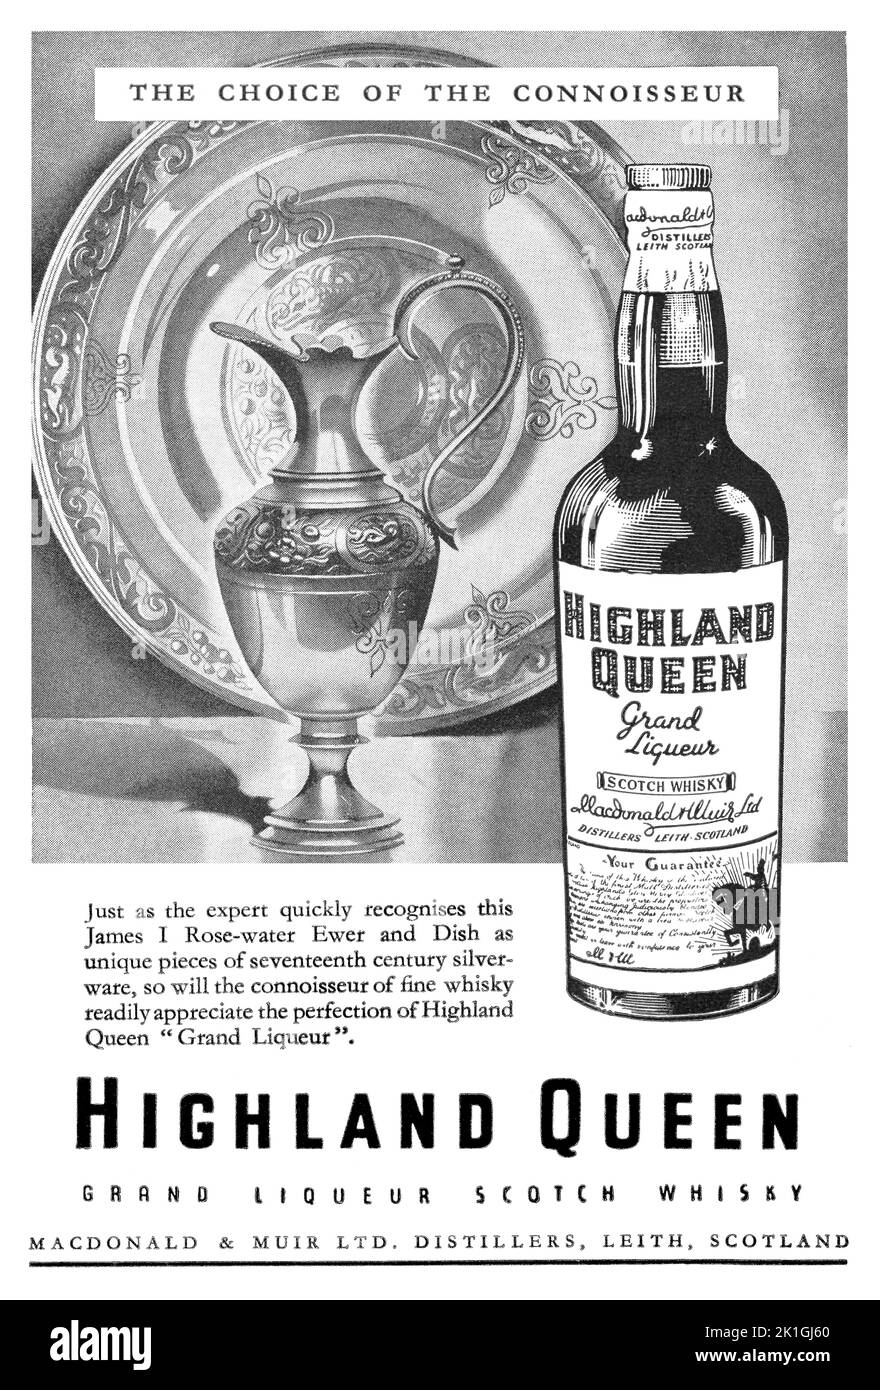 1948 Pubblicità britannica per Highland Queen Grand Liqueur Scotch Whisky di Macdonald e Muir Ltd. Foto Stock